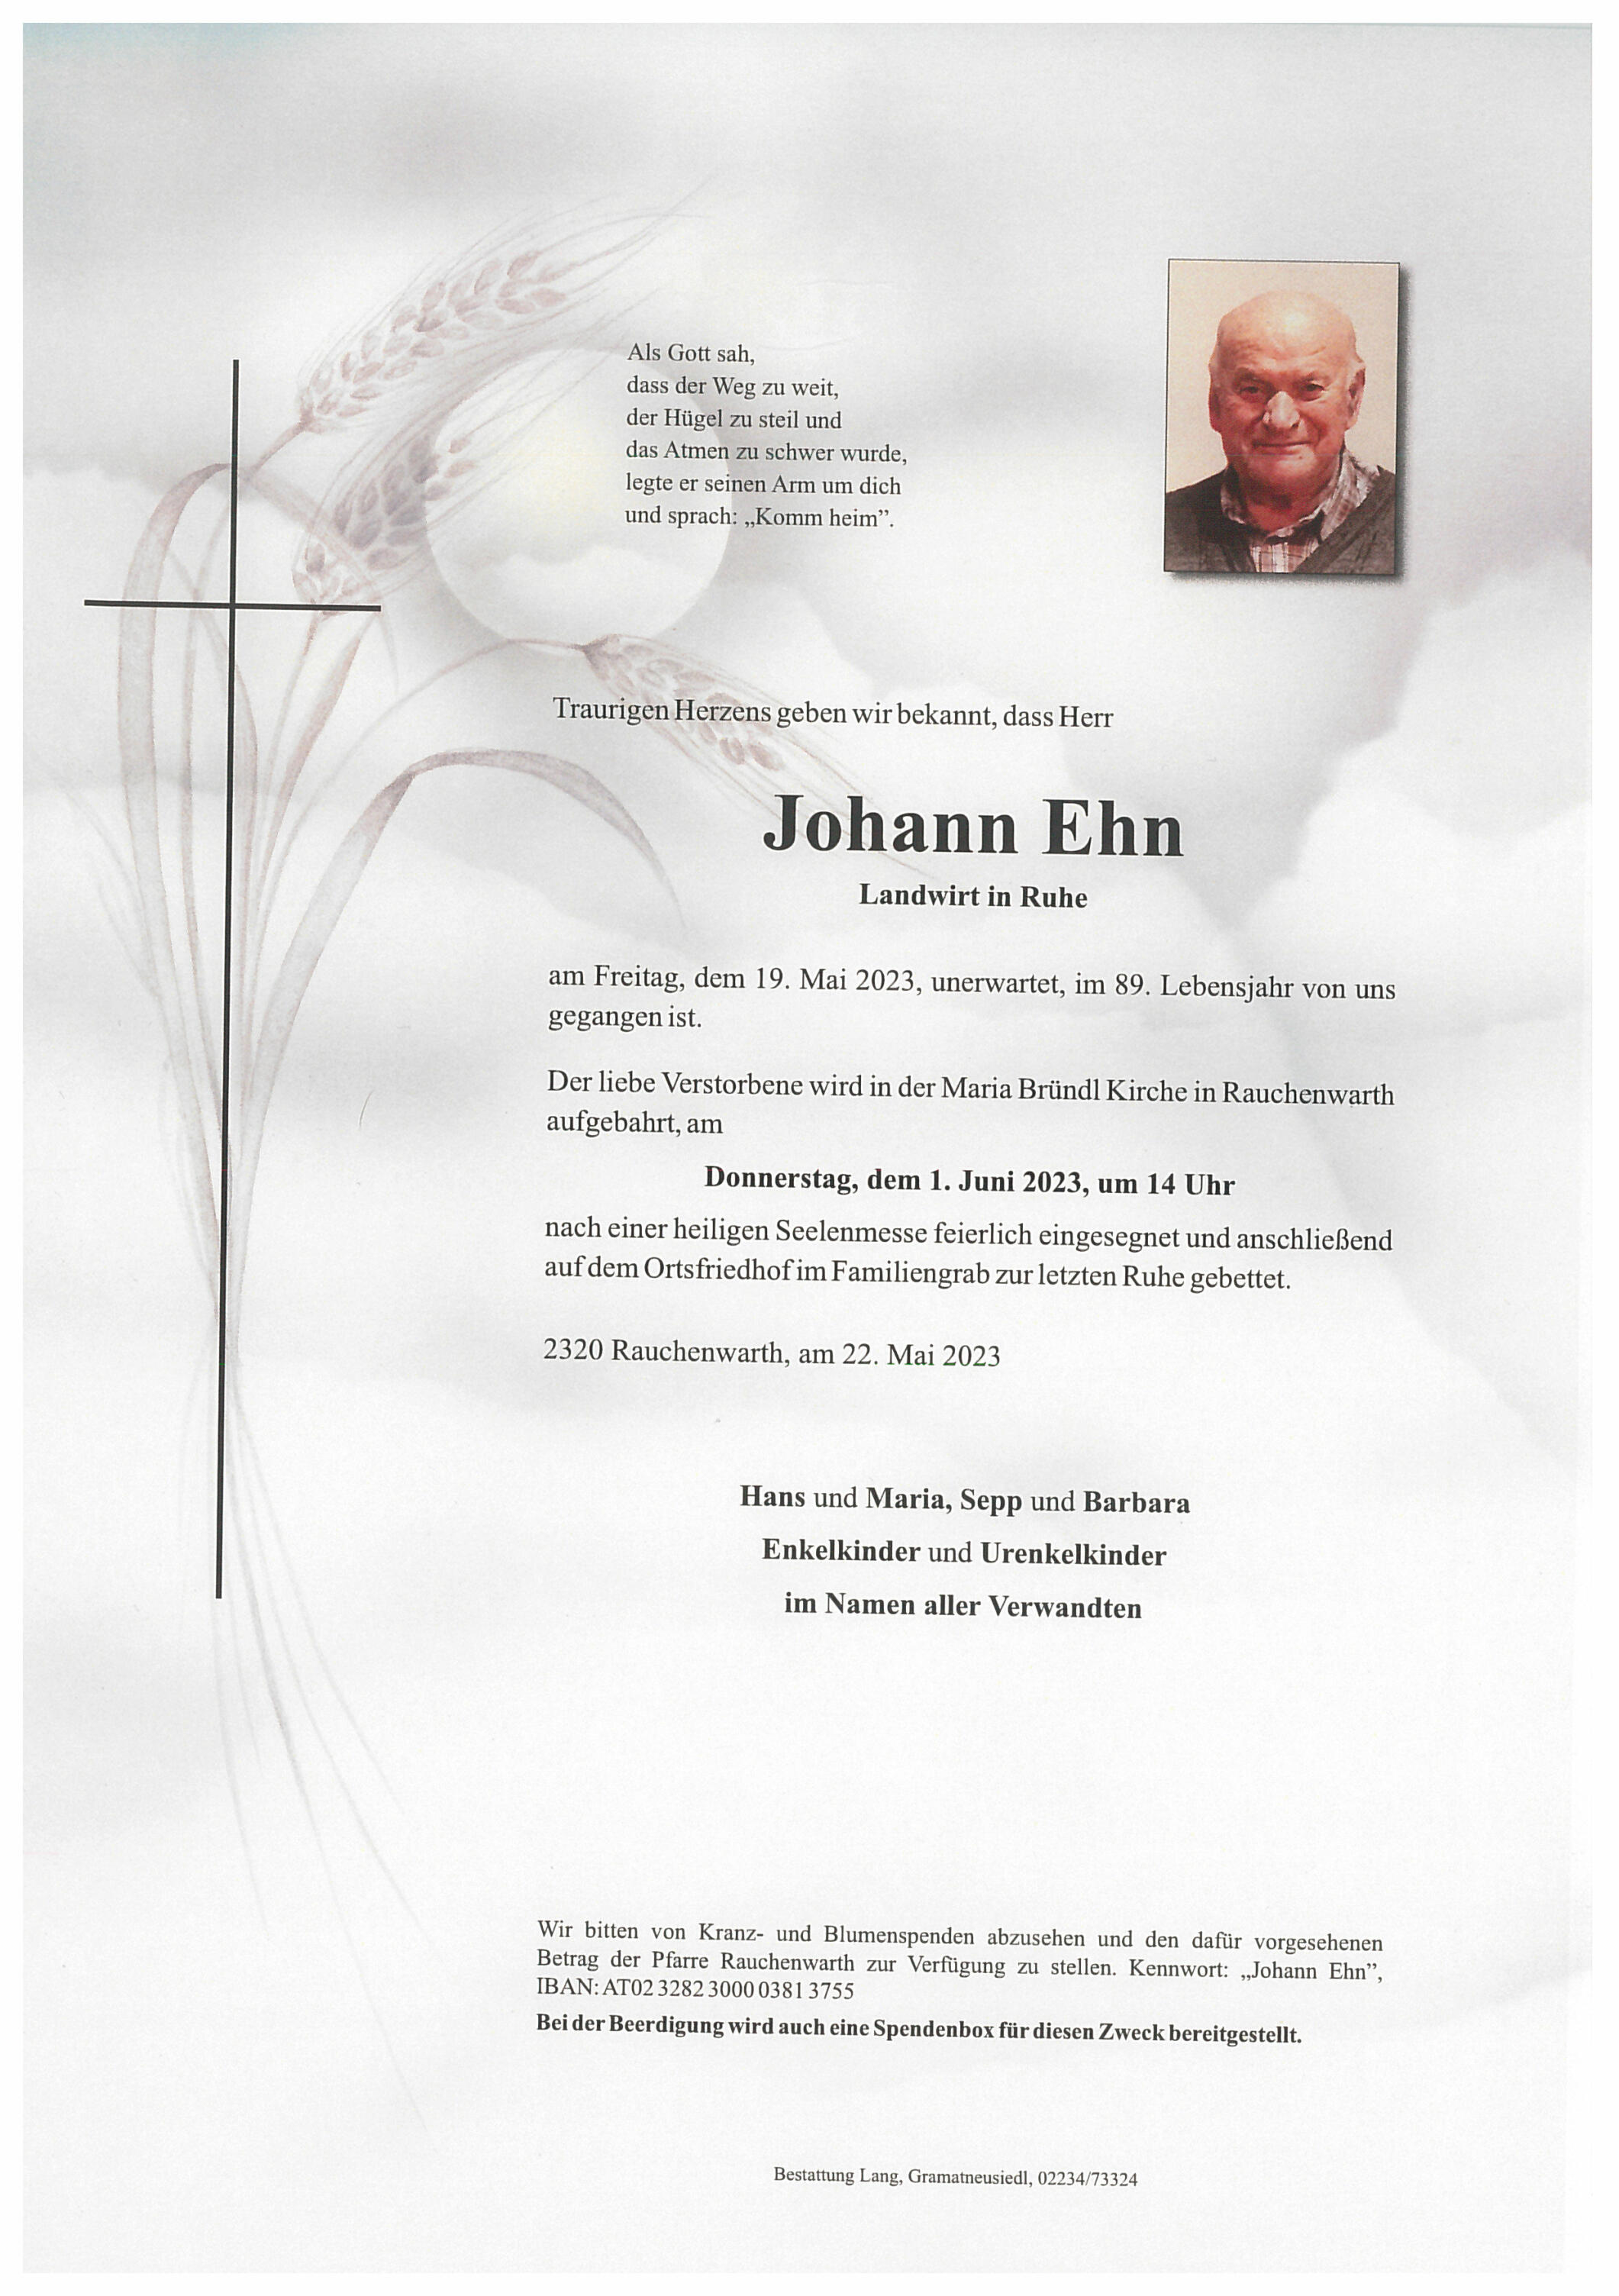 Johann Ehn